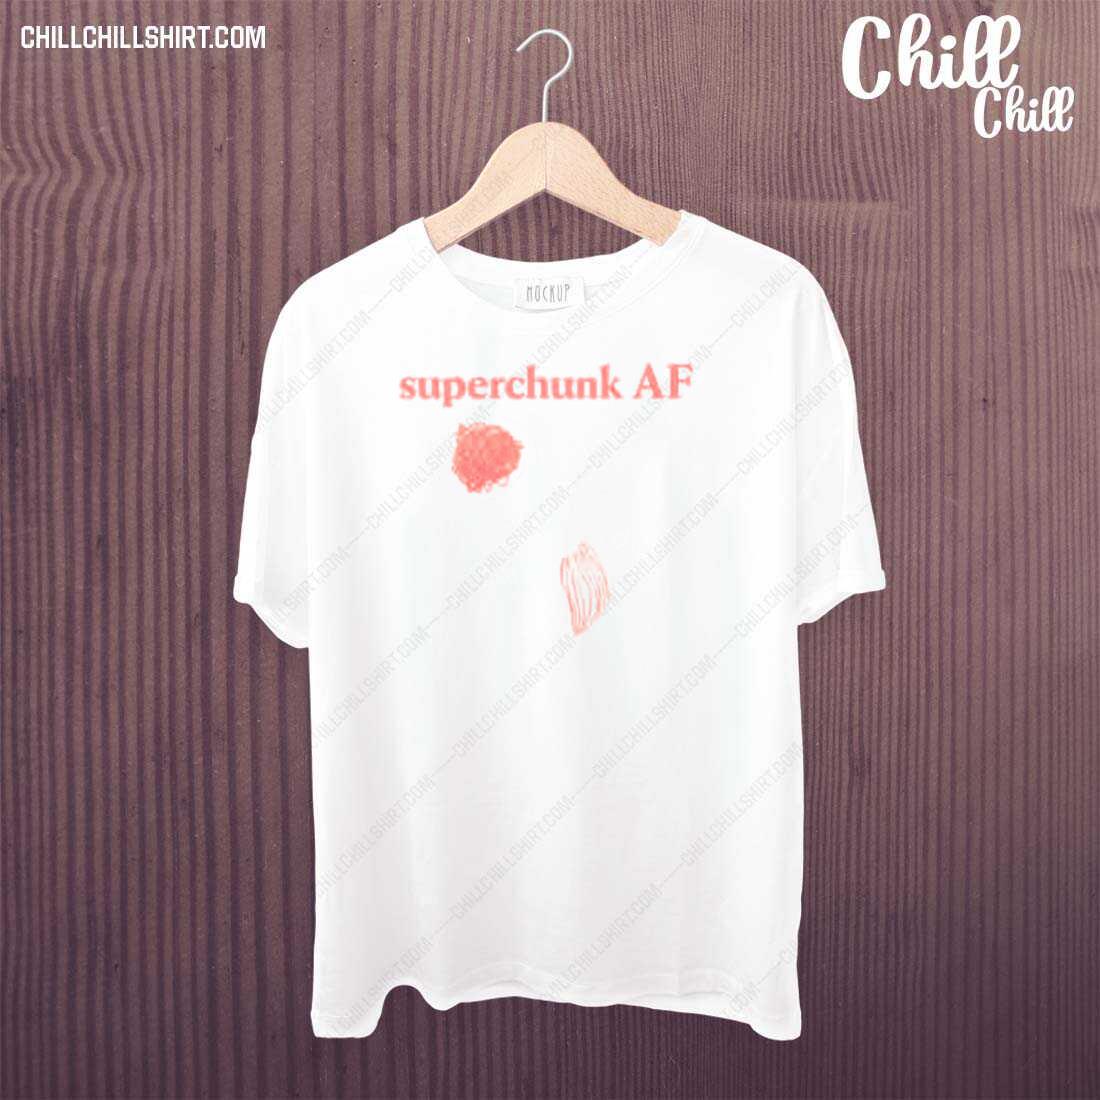 Official chapel Hill Superchunk Af Shirt